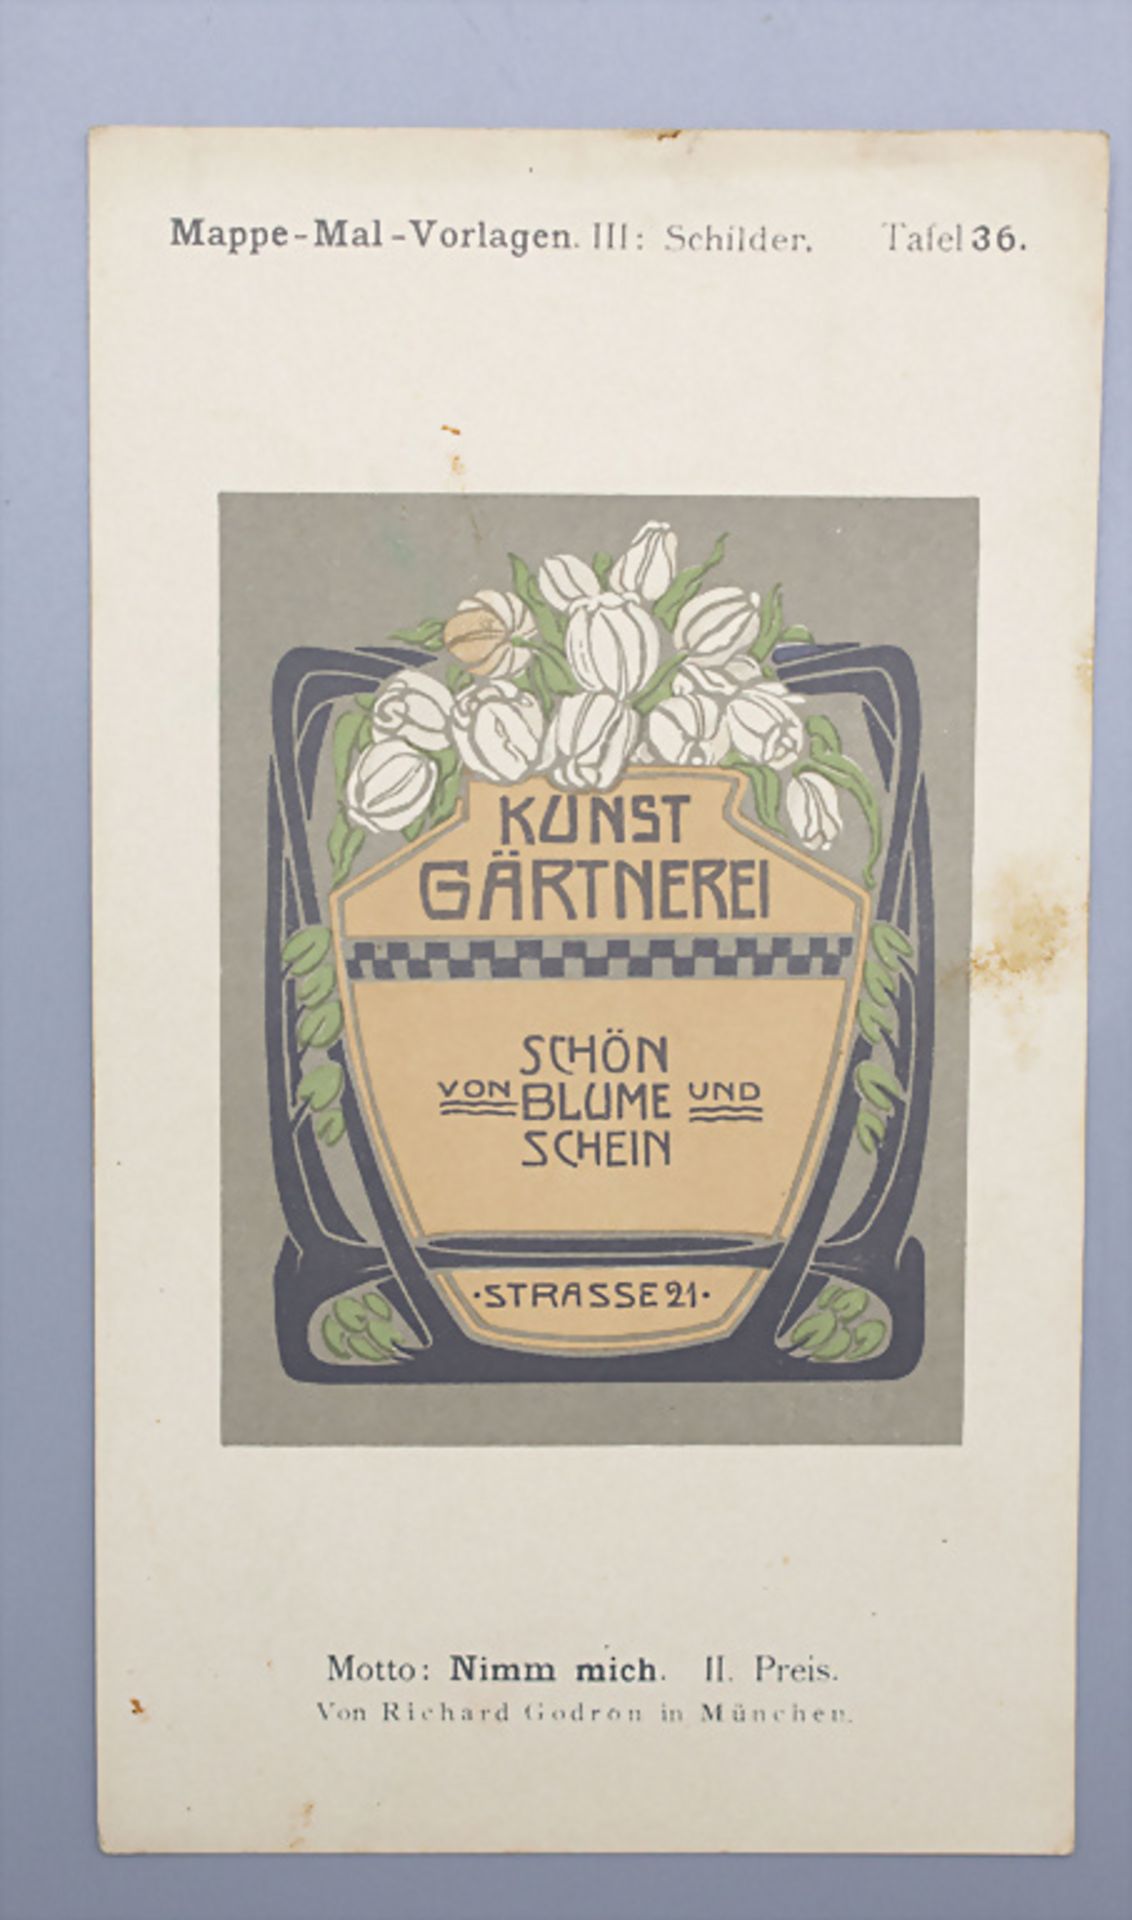 Jugendstil Mal-Vorlagen für Werbeschilder auf 36 Tafeln / 36 Art Nouveau pattern for ... - Bild 4 aus 9